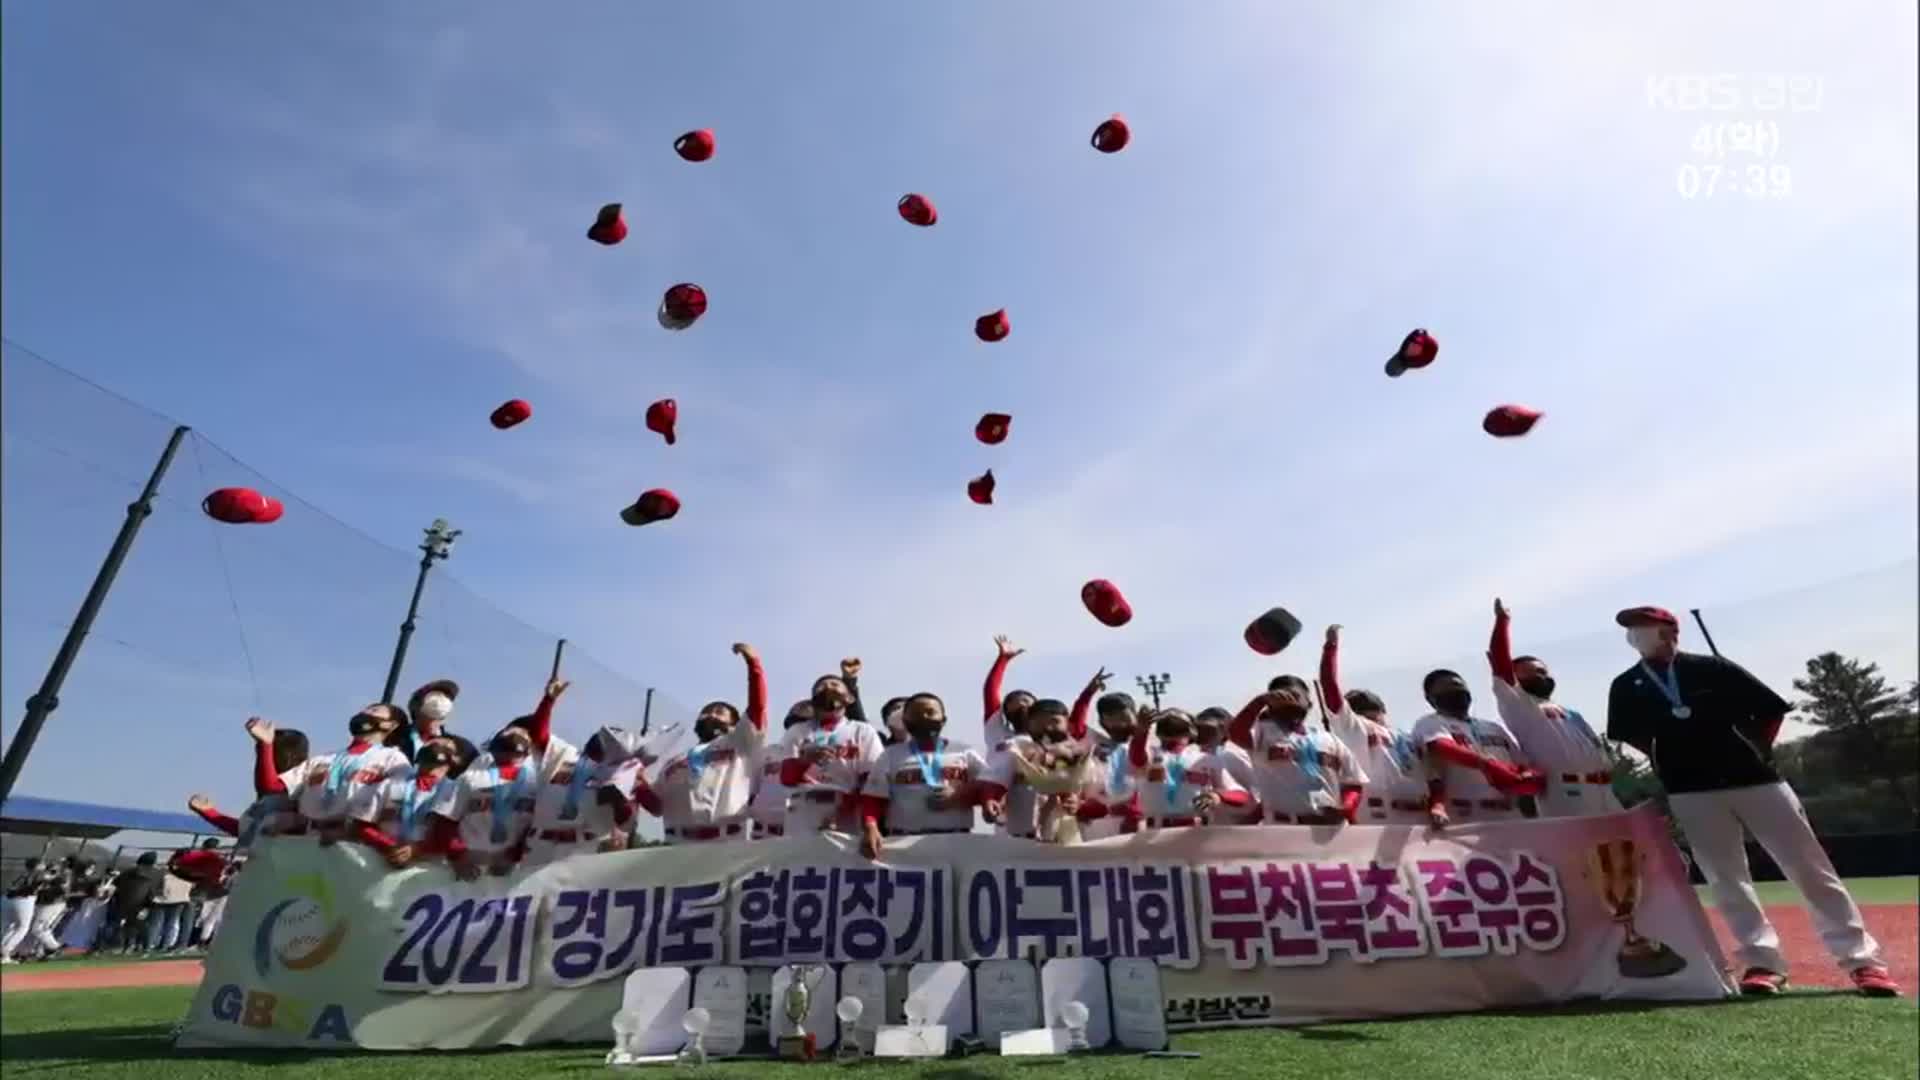 해체 위기에서 ‘행복 야구’로 준우승까지!